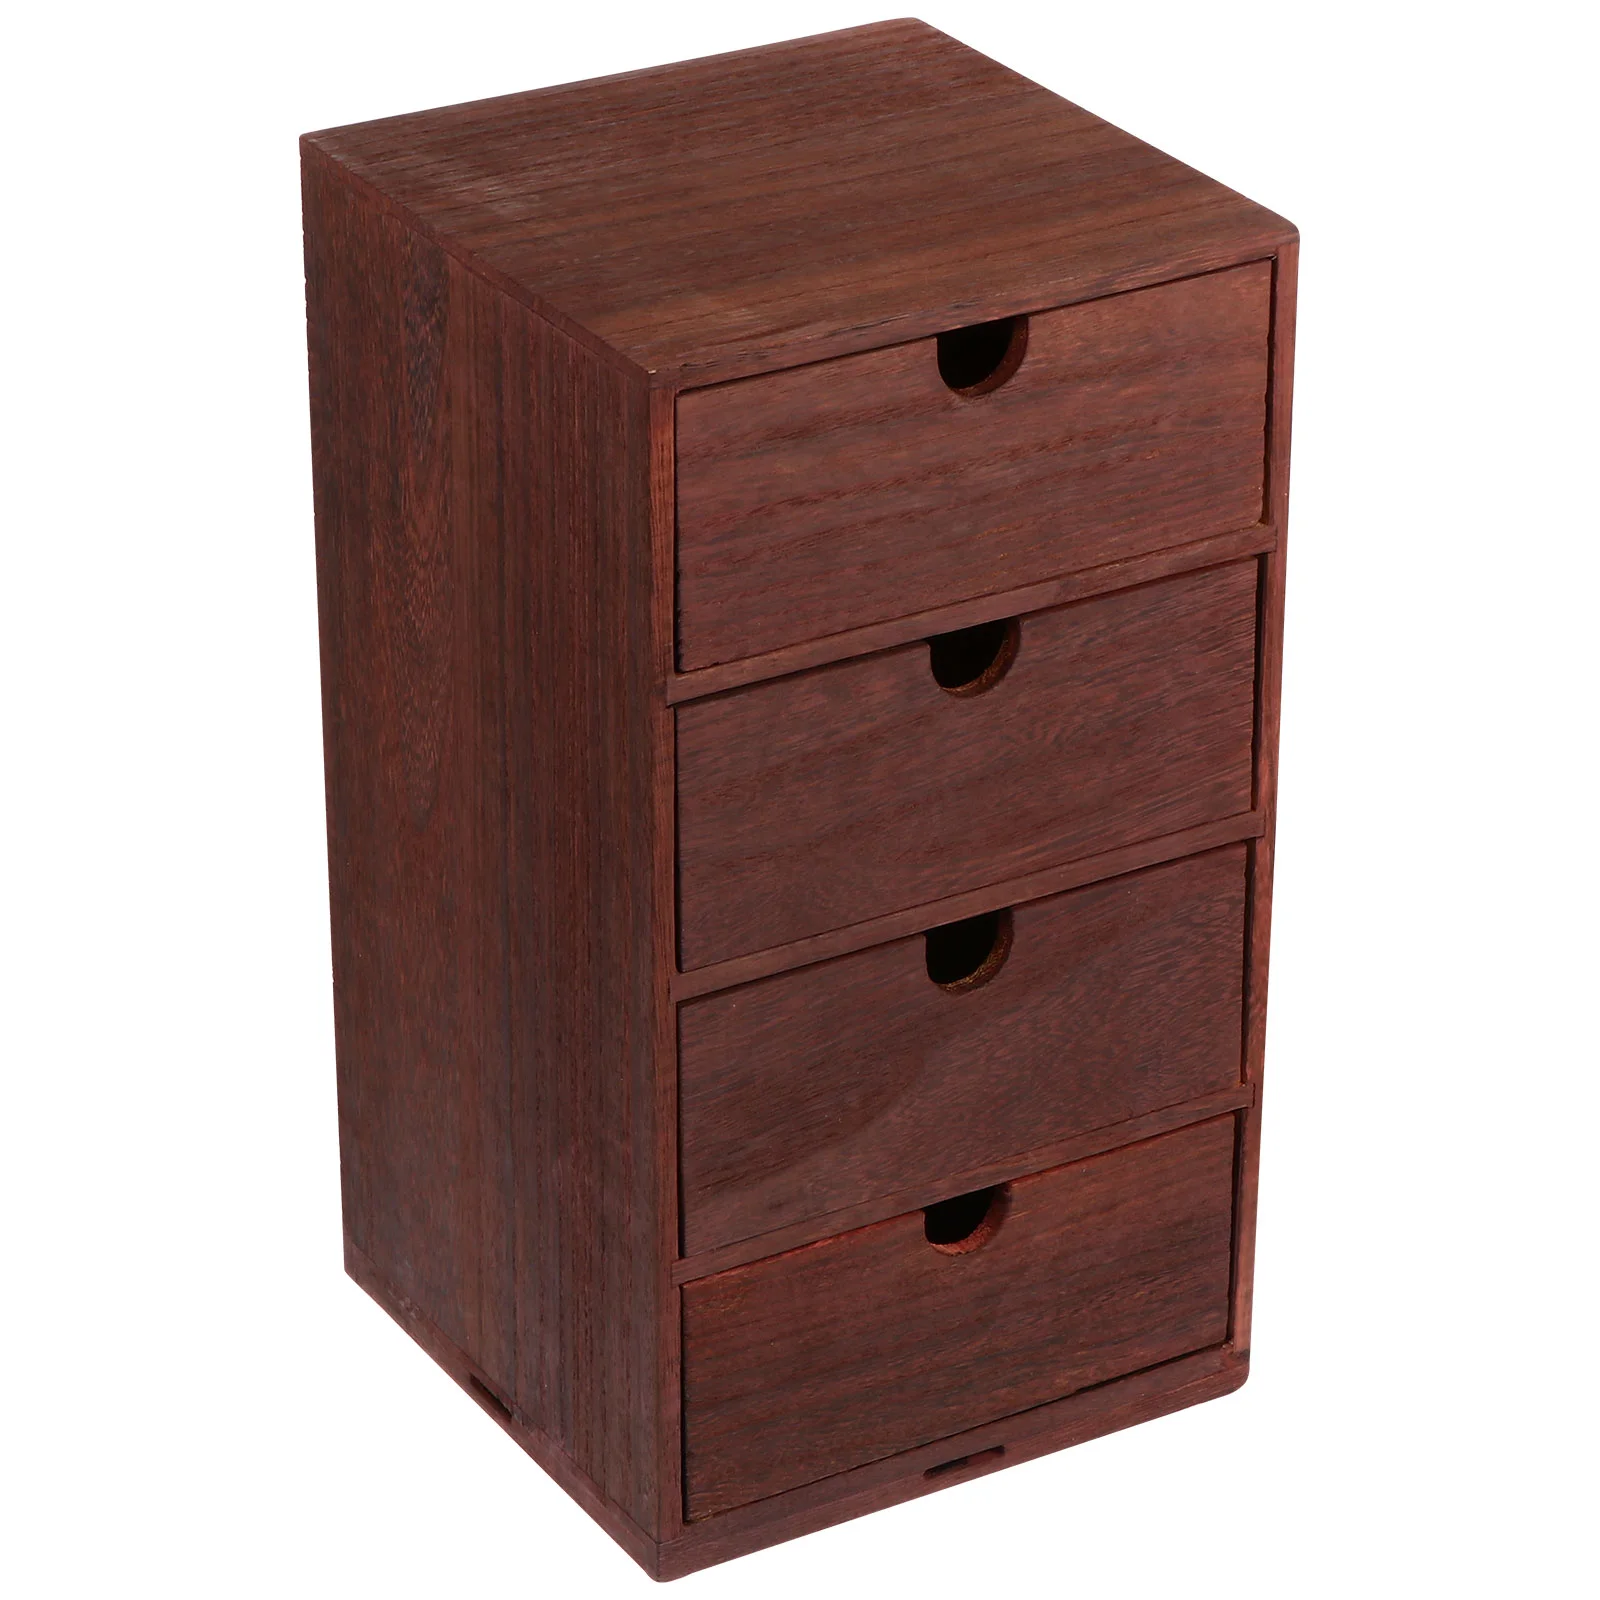 https://ae01.alicdn.com/kf/S89f1764b65f240f78530b2fa3fd8e8fas/Holz-Lagerung-Schublade-Box-Organizer-Schubladen-Holz-Desktop-Schreibtisch-Kisten-Schrank-Kommode-Mini-Cube-Tabletop-Boxen.jpg